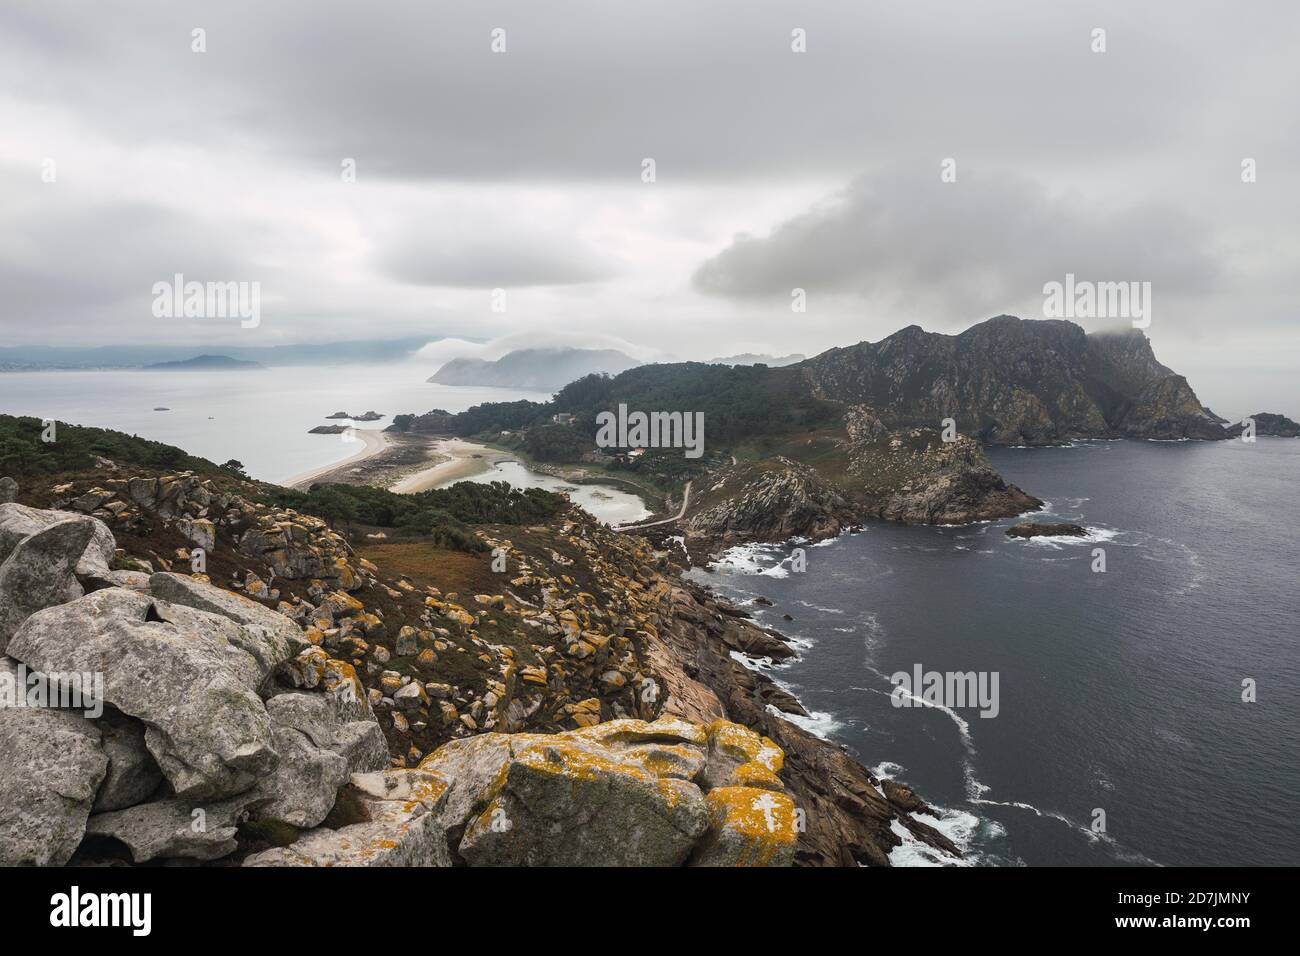 Idyllische Aufnahme der Cíes-Inseln am Meer gegen bewölkten Himmel, Vigo, Provinz Pontevedra, Galizien, Spanien Stockfoto